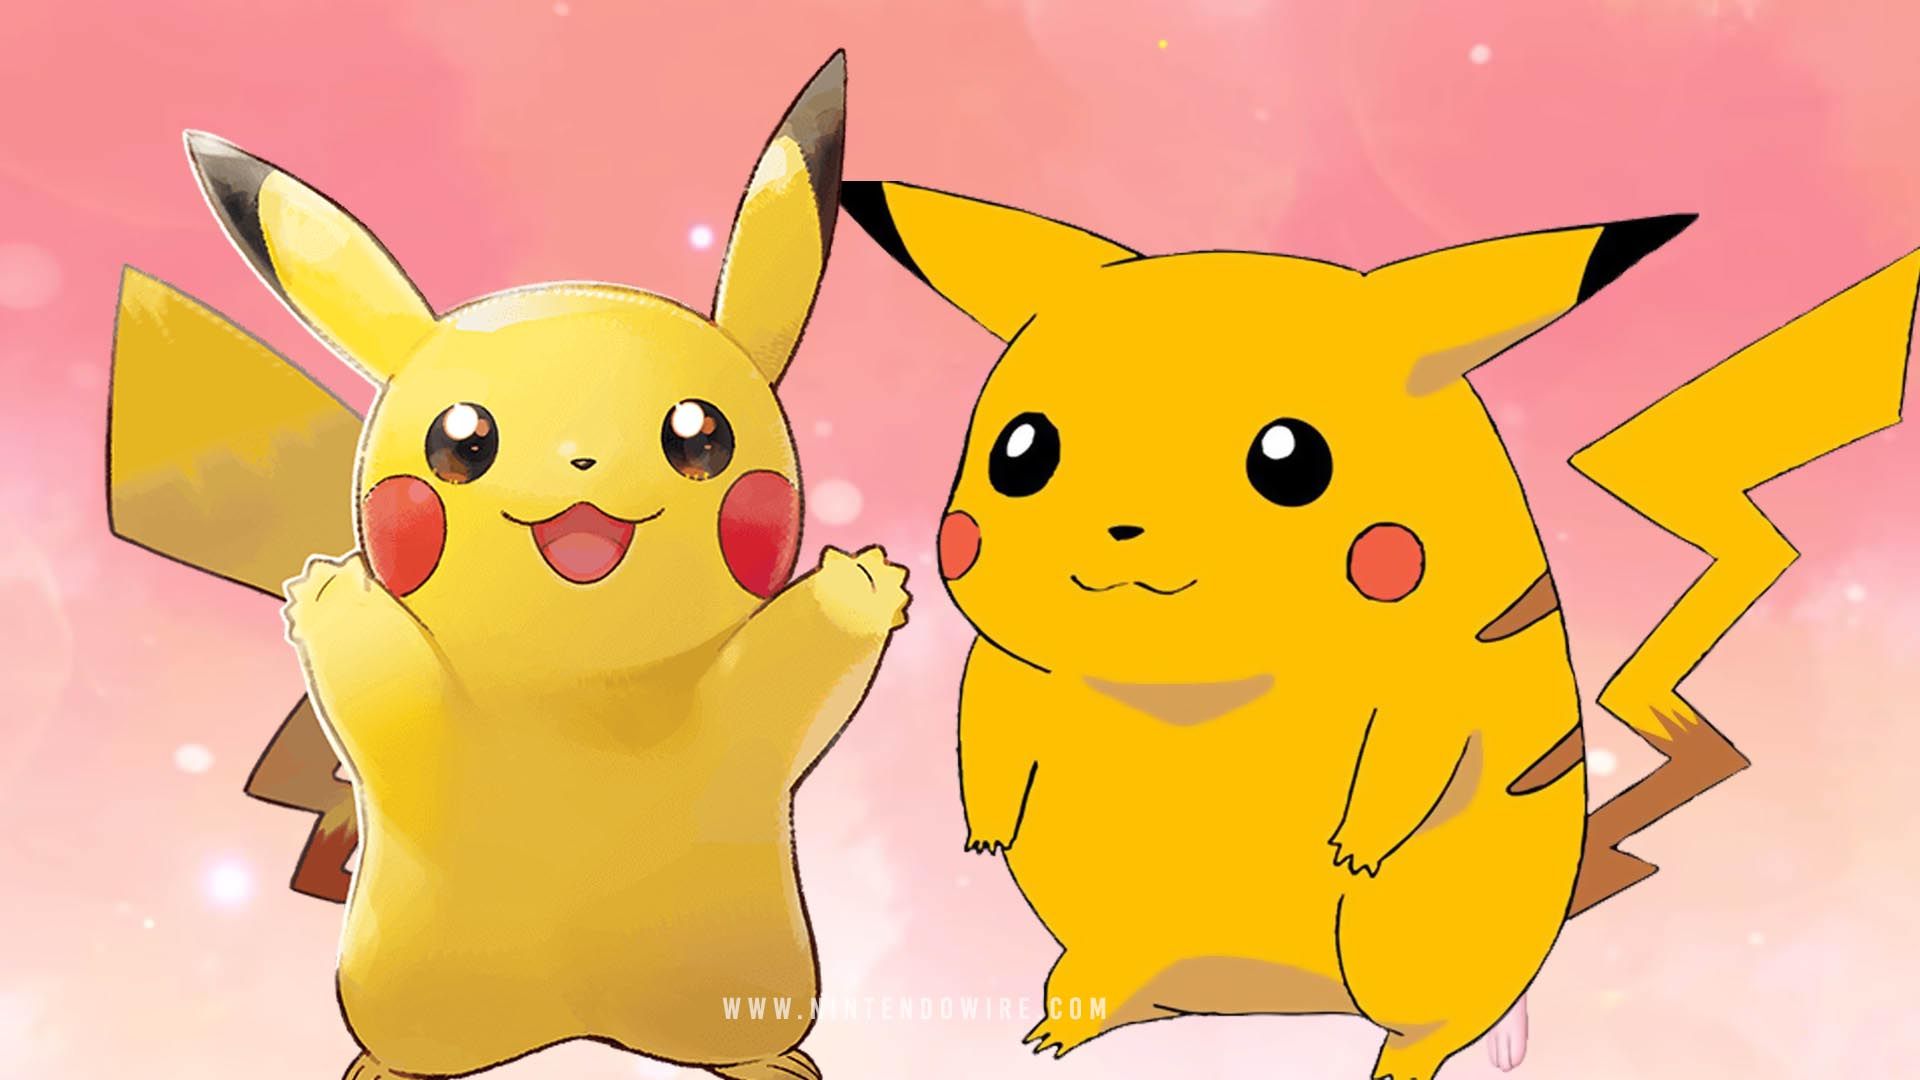 According to original Pokémon artist, fat Pikachu originally based on Japanese sweet